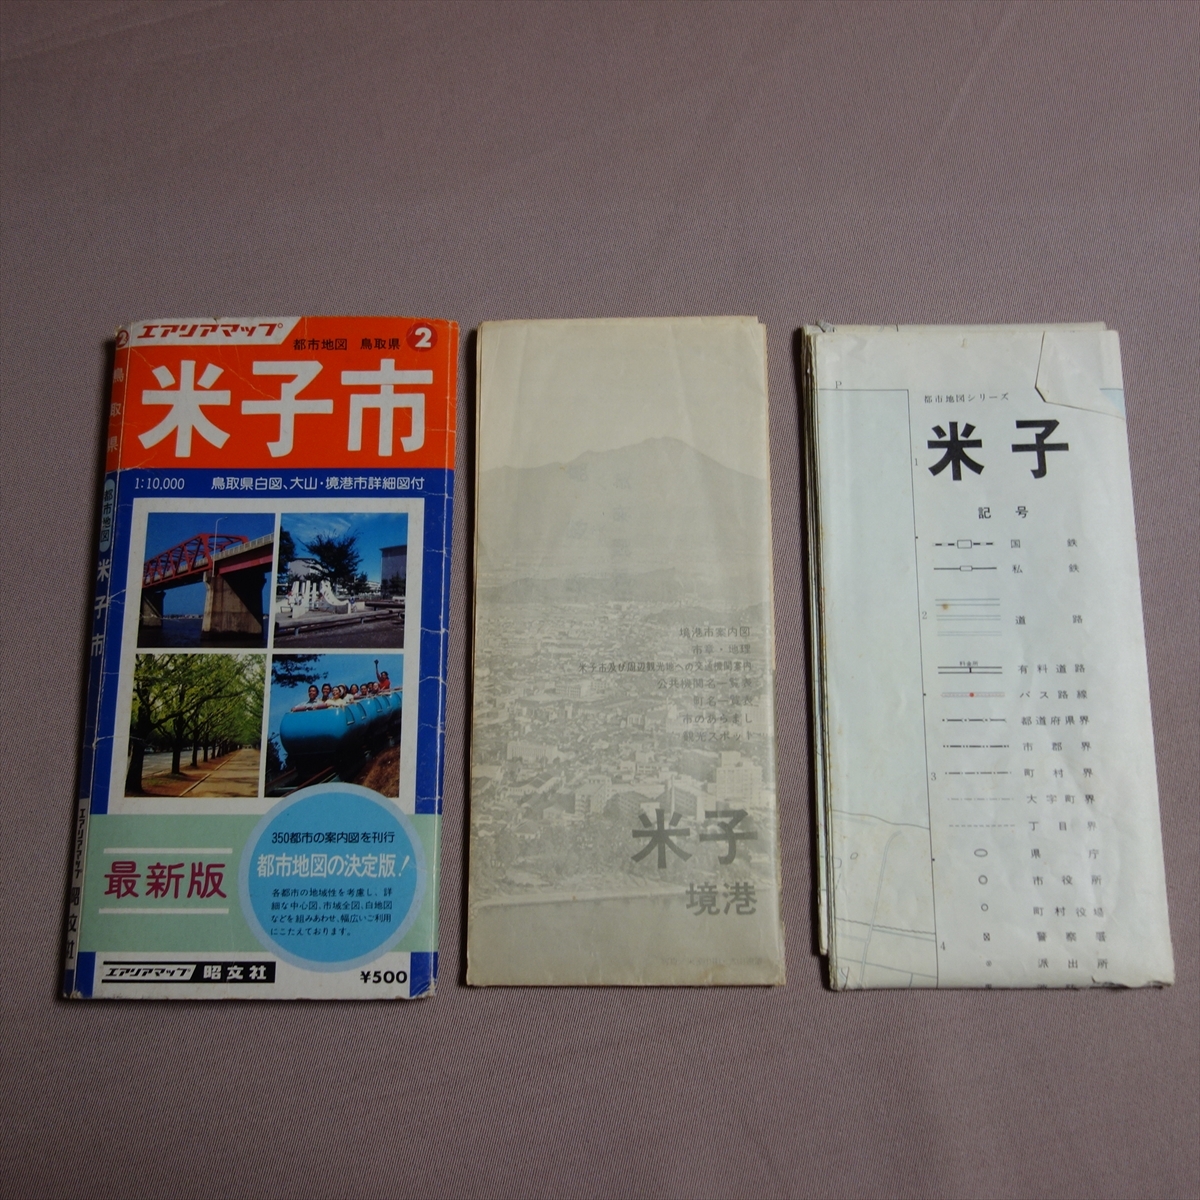 昭和55年 エアリアマップ 米子市 都市地図 鳥取県2 / 地図 昭和_画像1